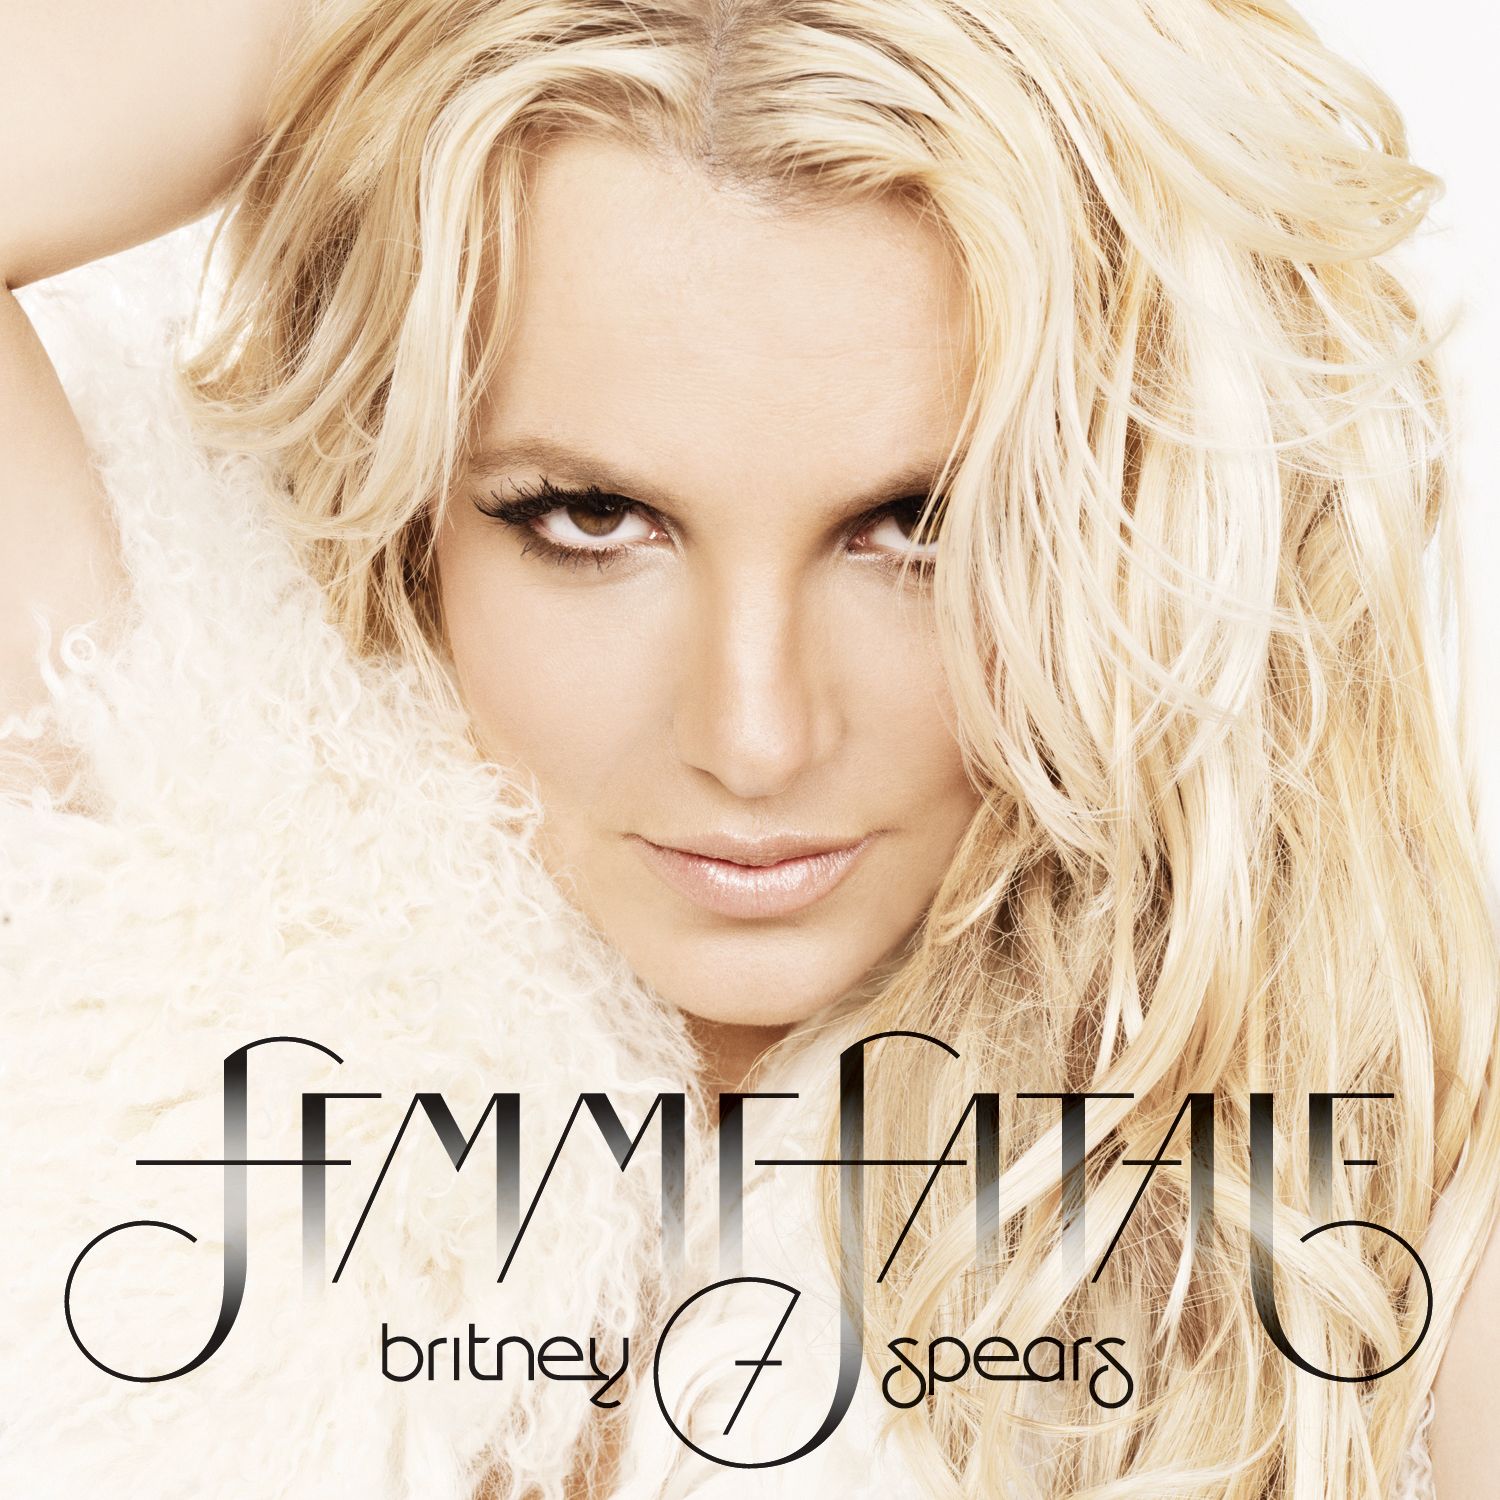 http://2.bp.blogspot.com/-yFCs59AkGhc/Tv4soy-Fm_I/AAAAAAAABHw/J-7ozWLX7SE/s1600/Britney-Spears-Femme-Fatale.jpg